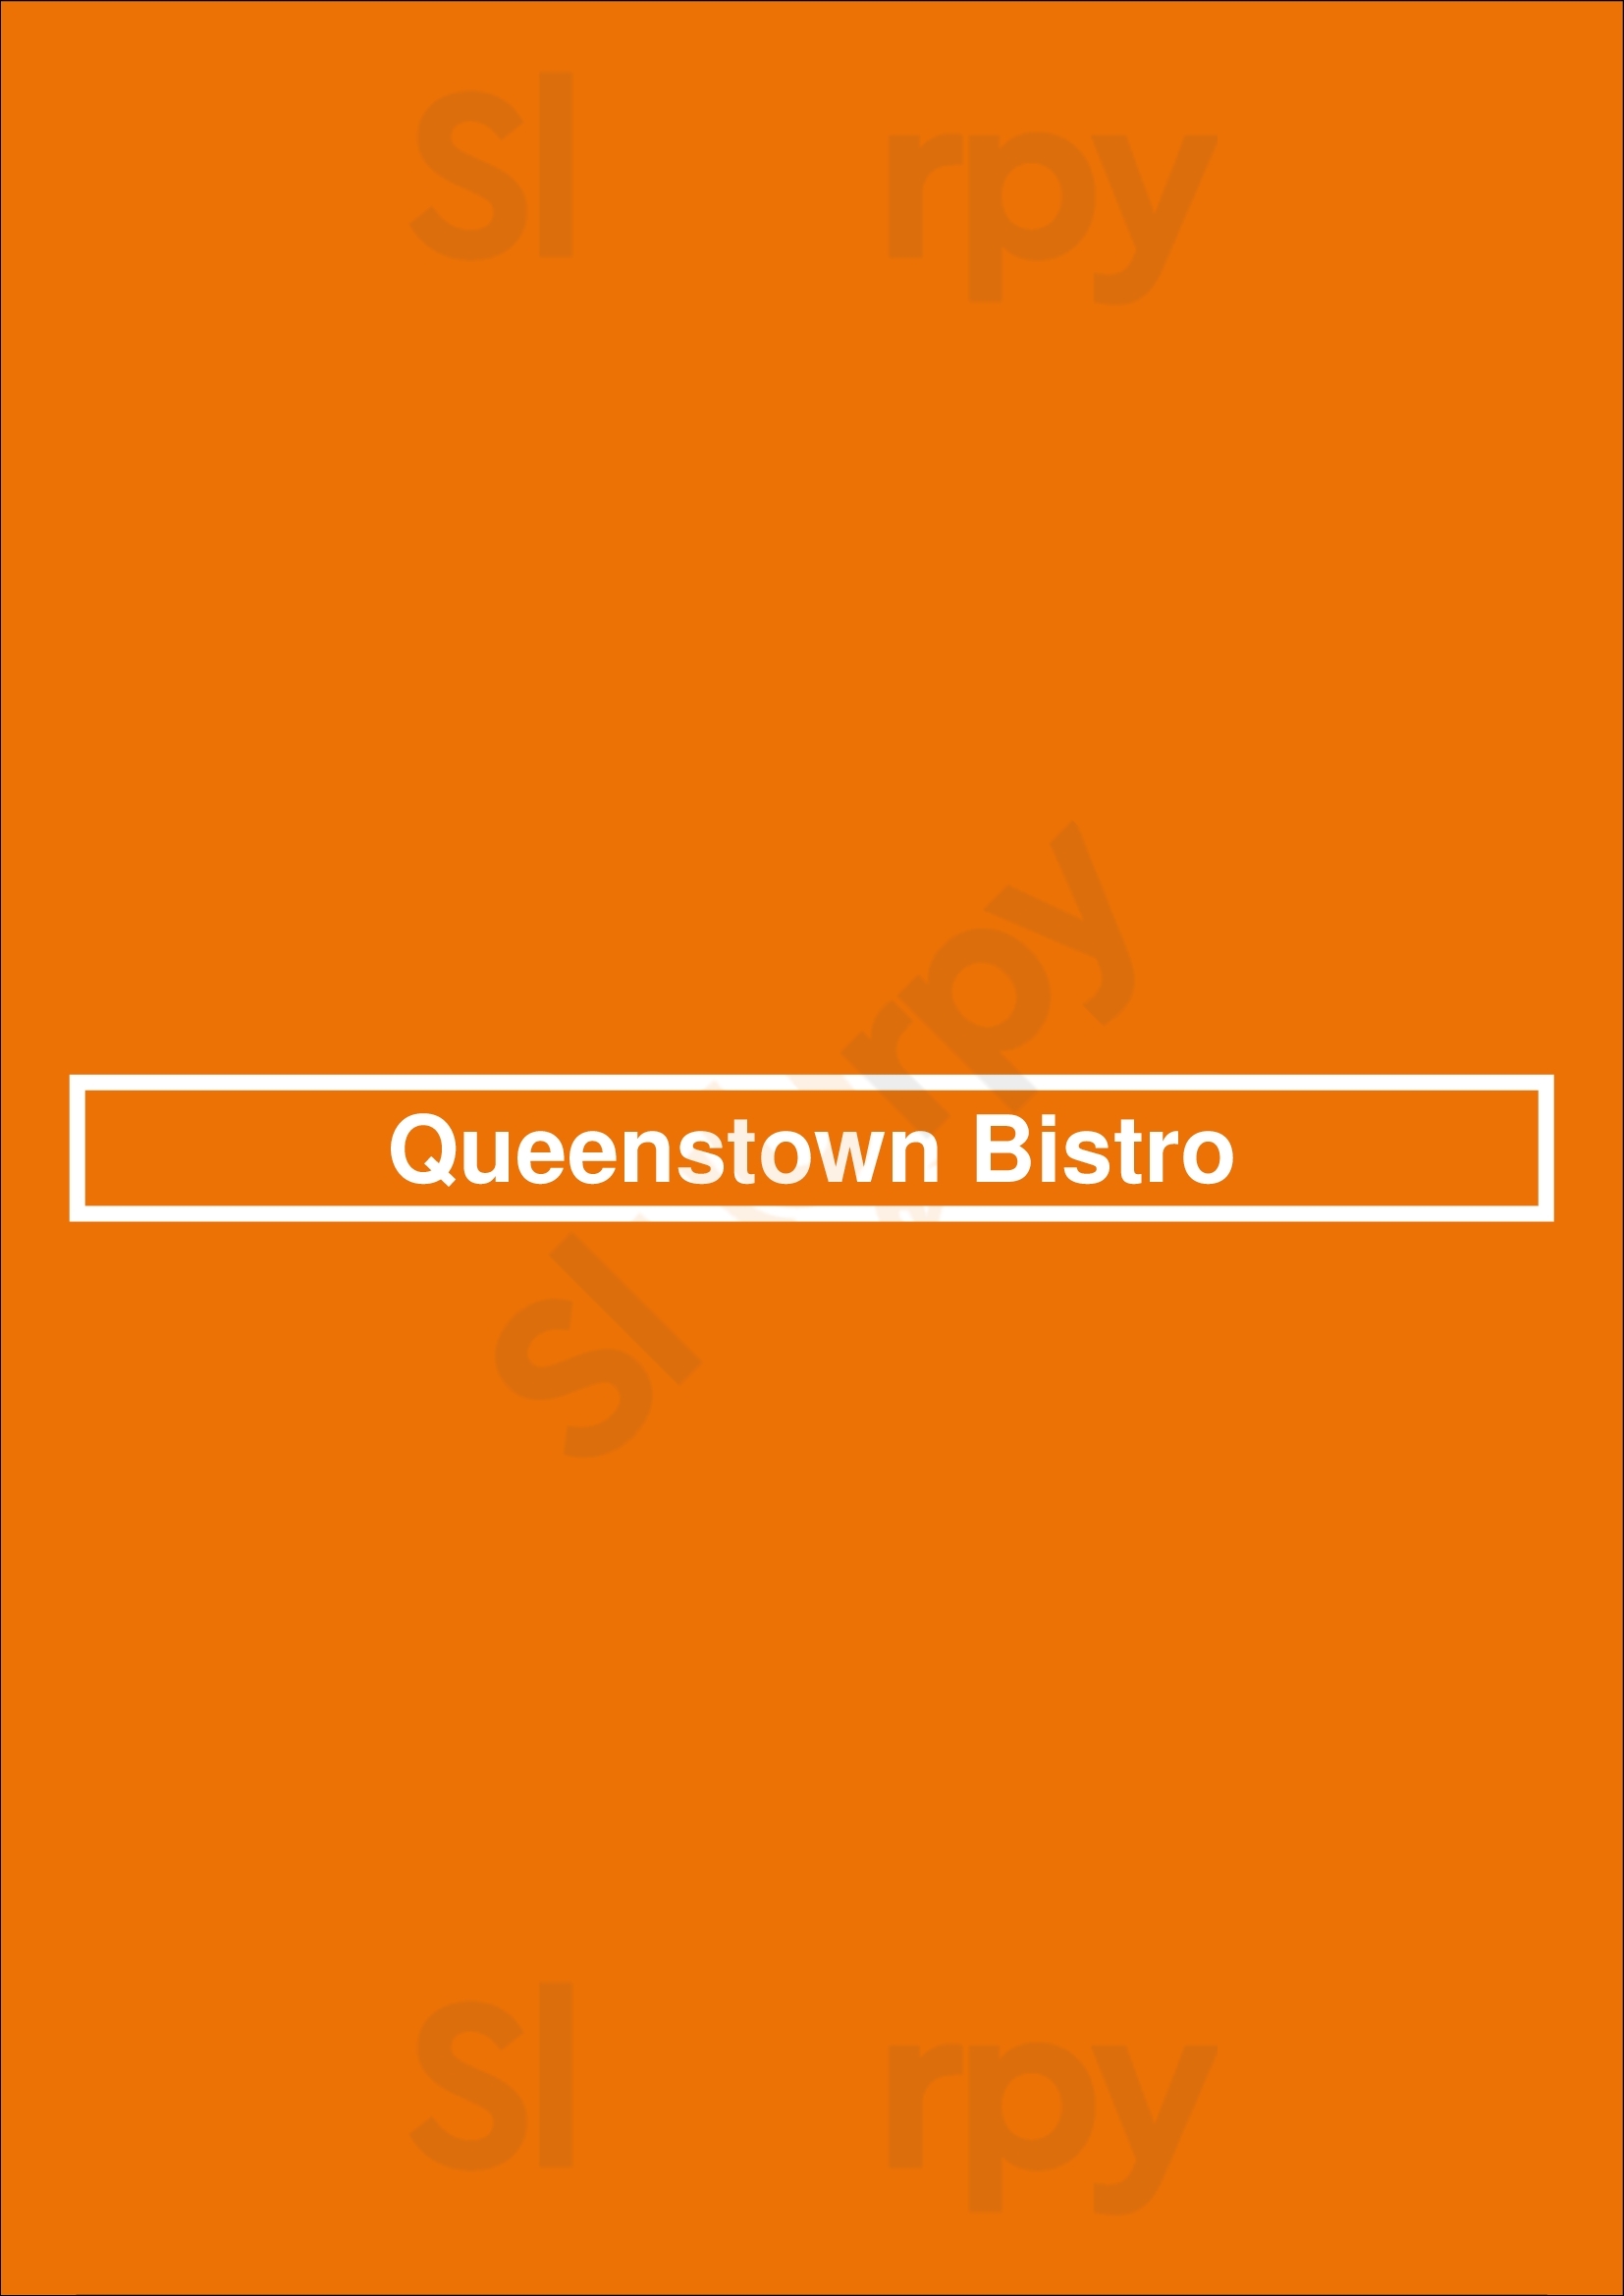 Queenstown Bistro San Diego Menu - 1